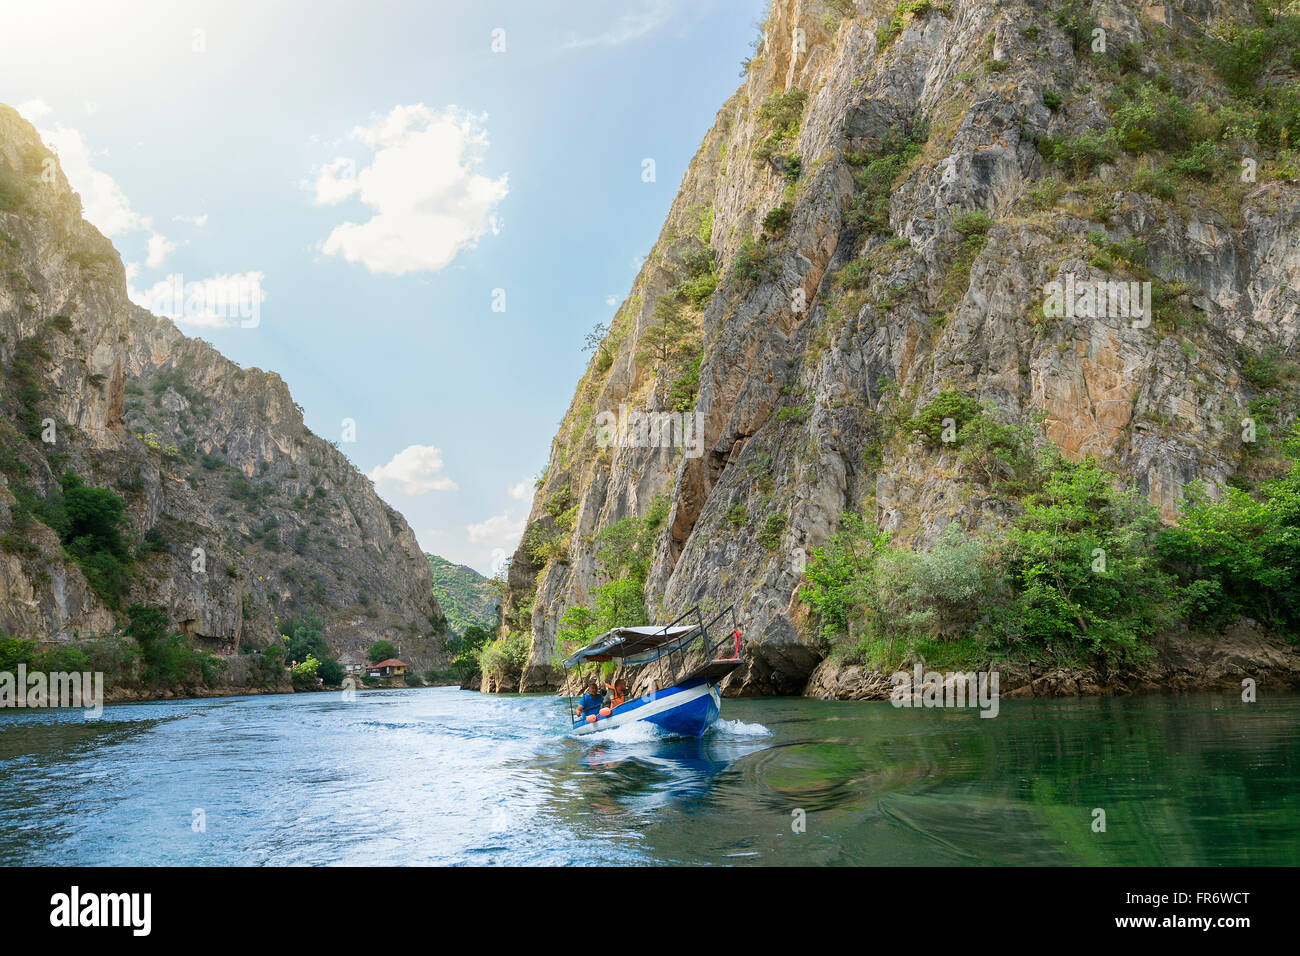 République de Macédoine, Saraj, le lac et le canyon de Matka, alimenté par la rivière Treska Banque D'Images